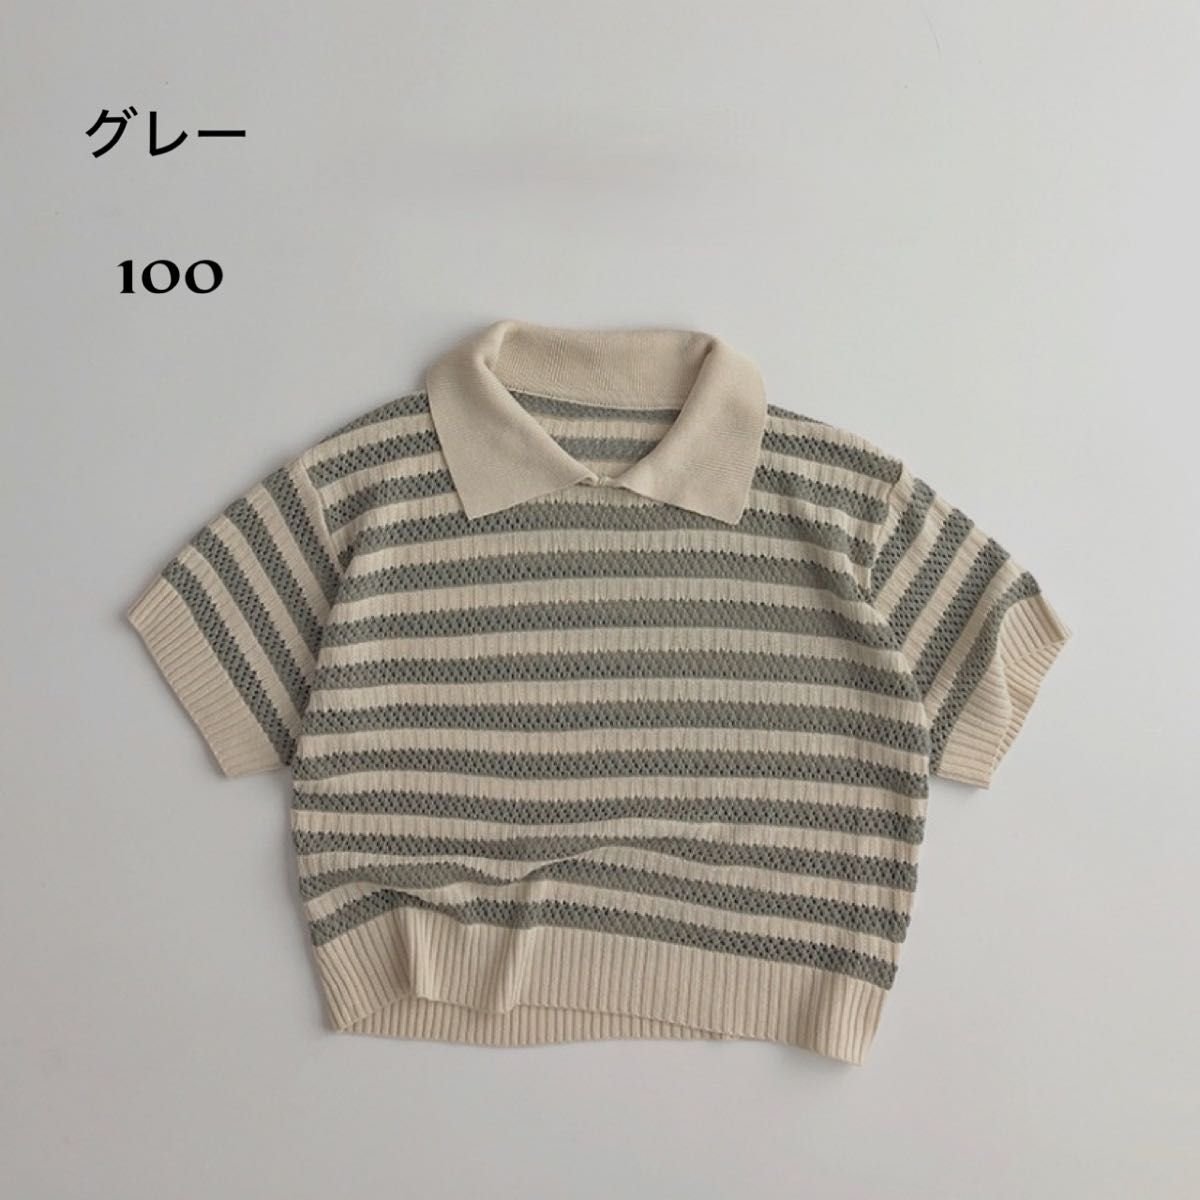 【残りわずか!!】透かし編み 襟付き ボーダートップス グレー100韓国風子ども服 キッズ